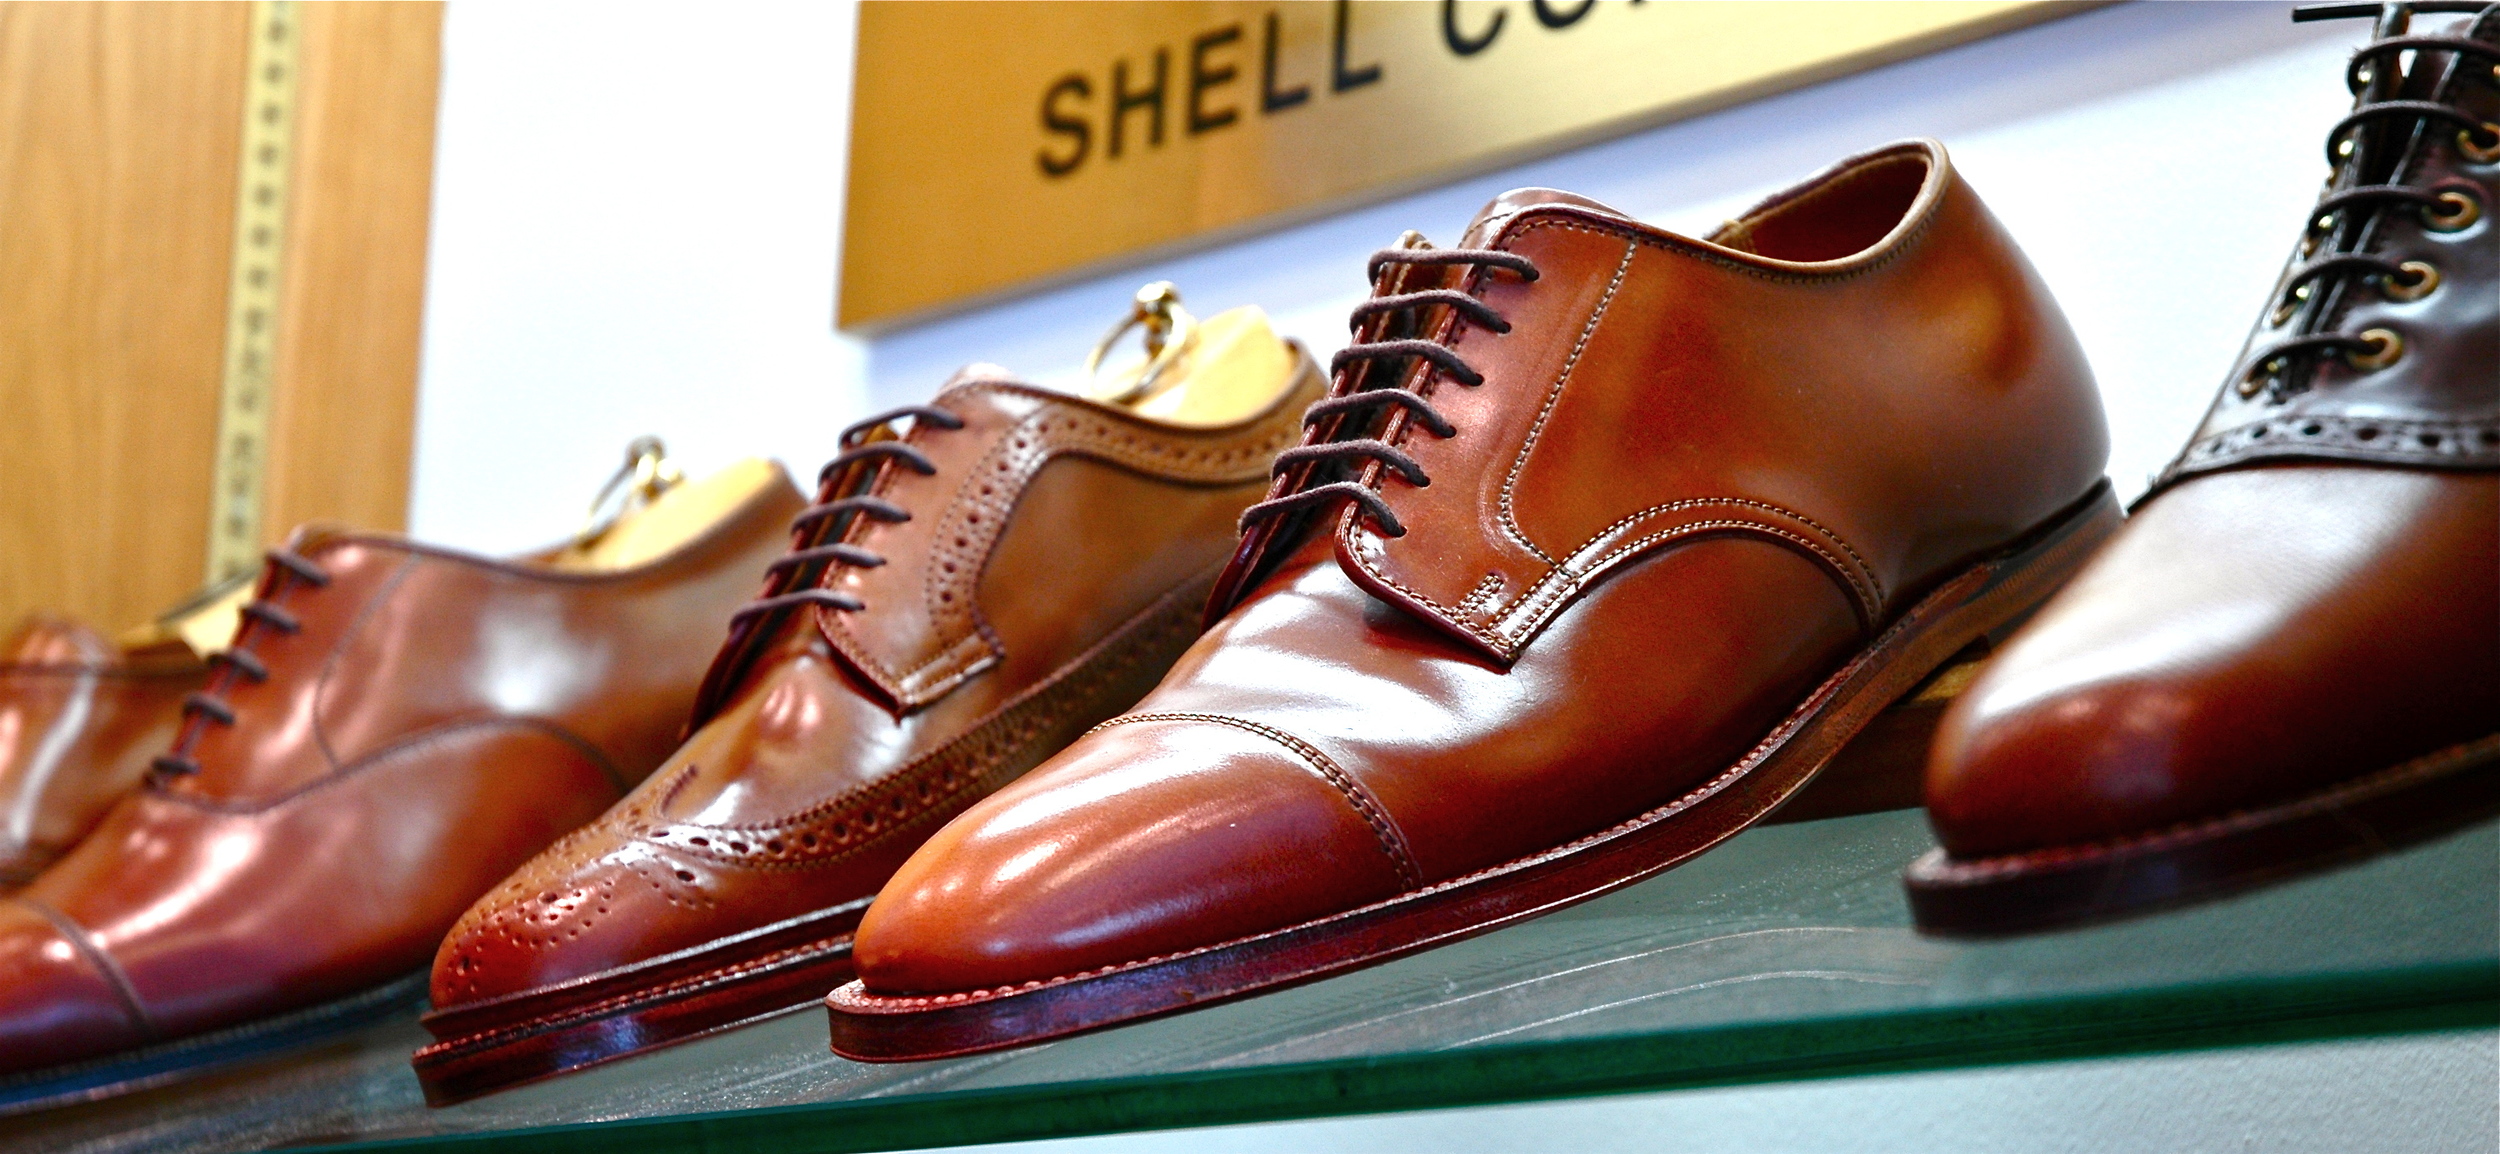 leather shoes on a glass shelf